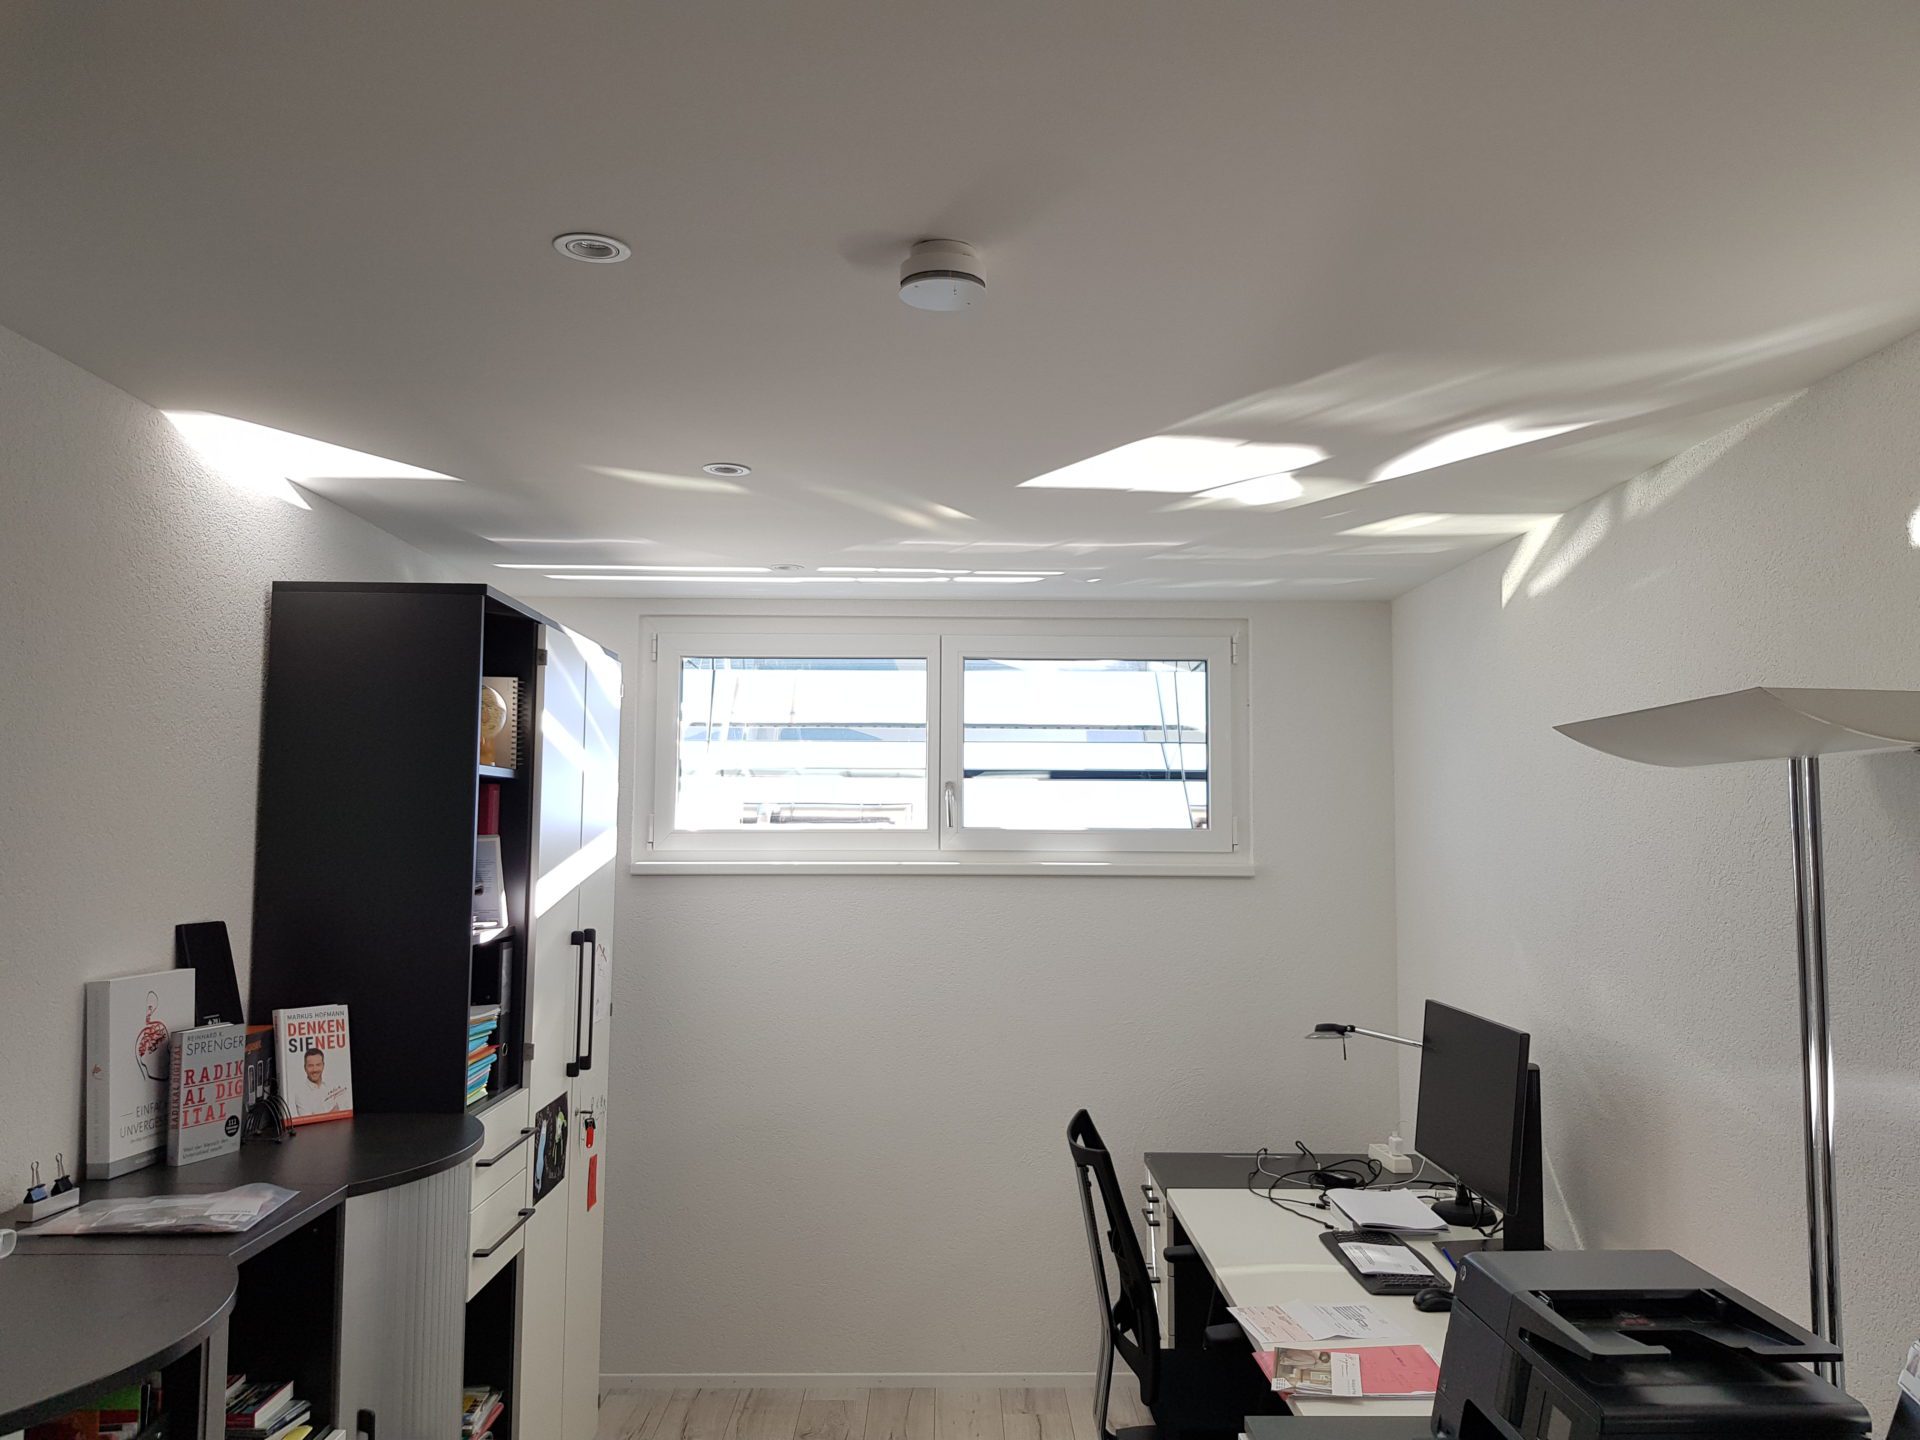 Spiegelschacht für nachträglich mehr Tageslicht im Untergeschoss - taghelles home office im Keller - Heliobus AG